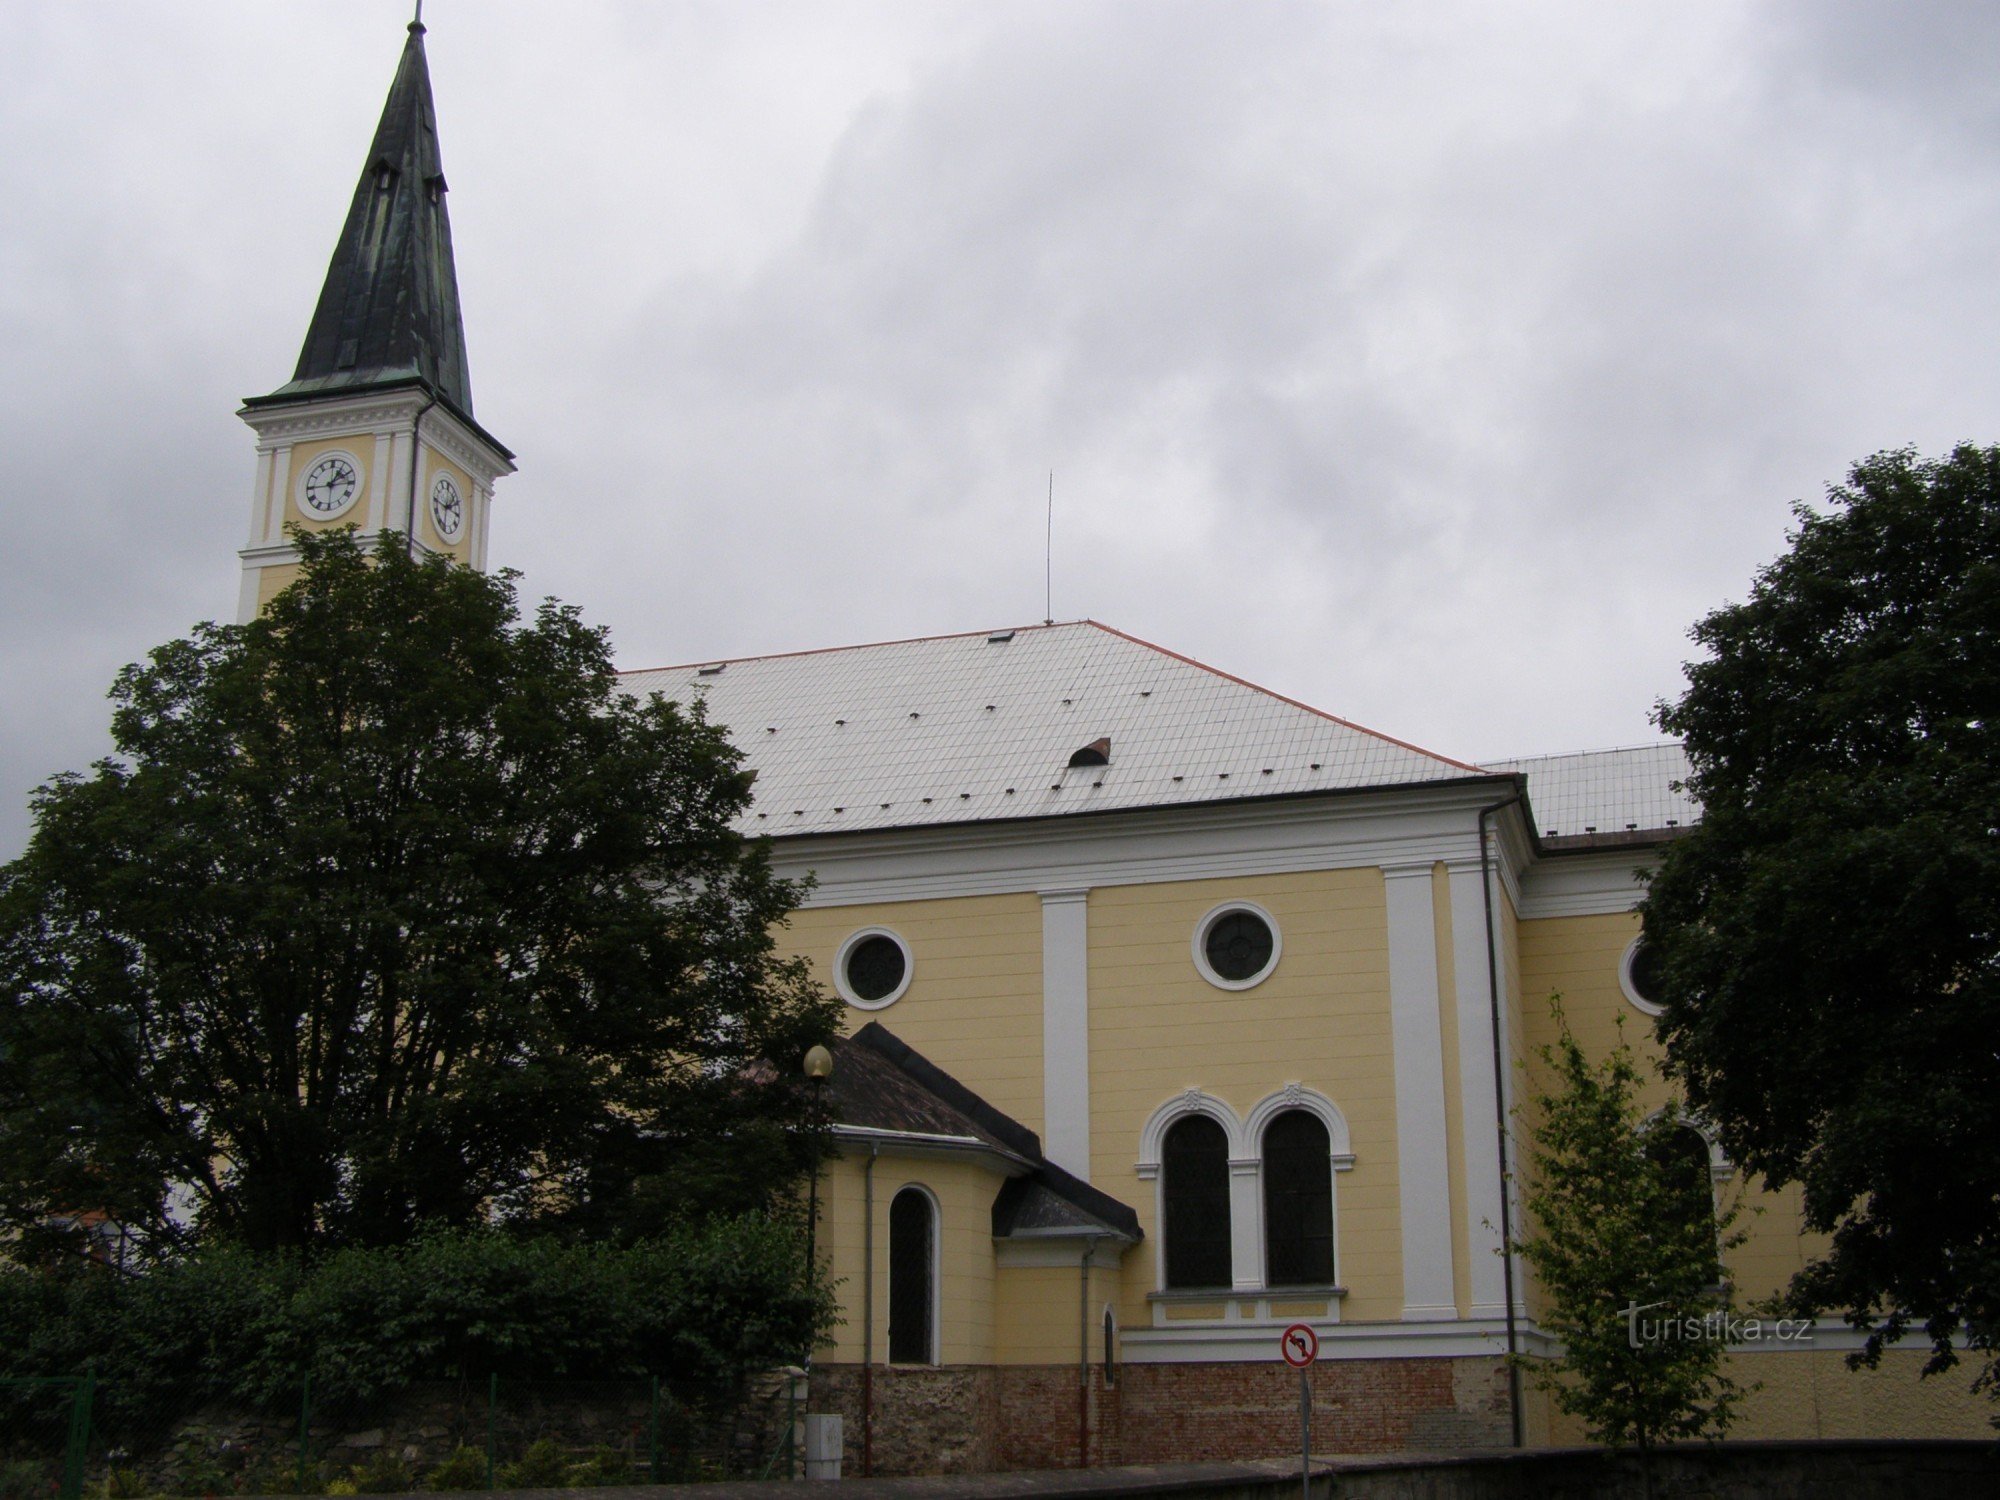 Jeseník - Church of the Assumption of the Virgin Mary